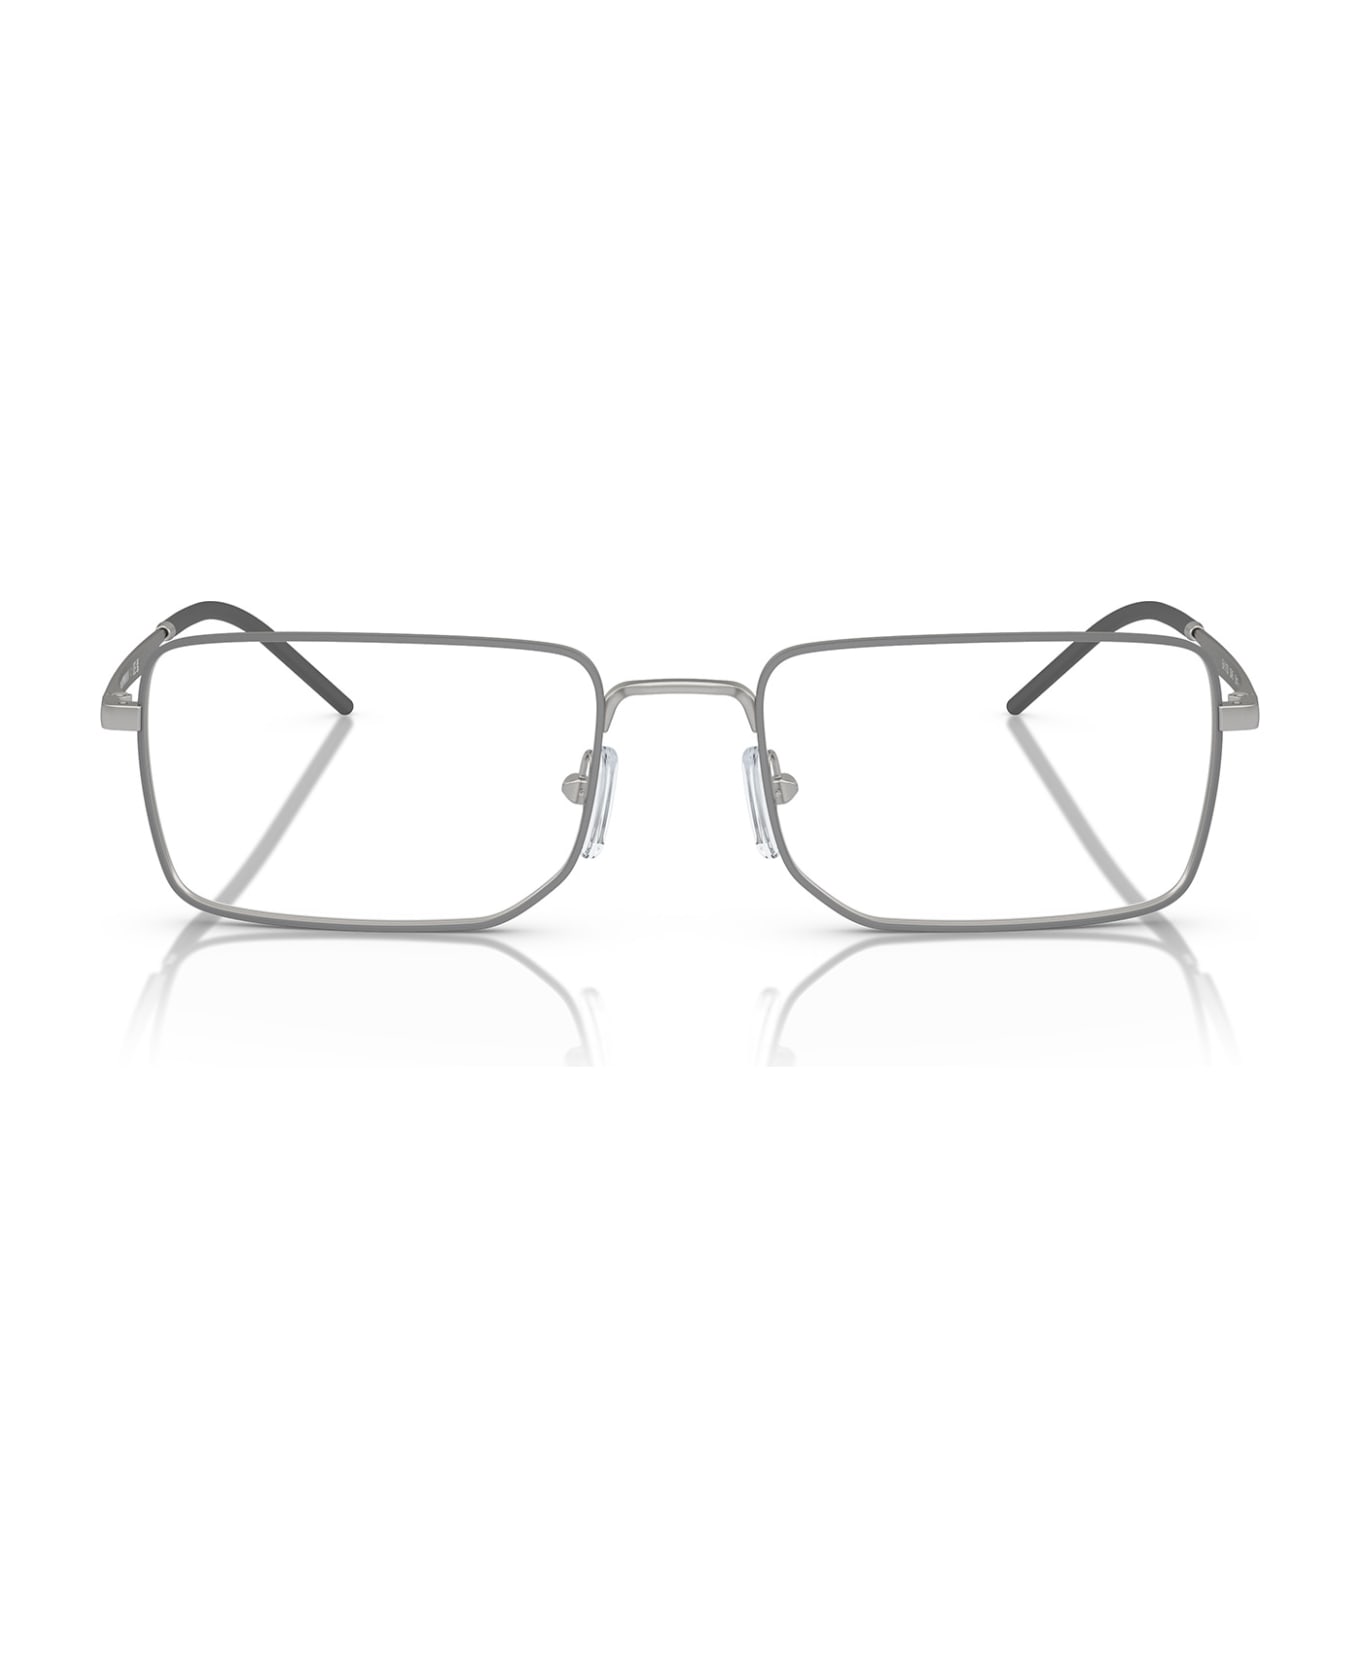 Emporio Armani Ea1153 Matte Silver Glasses - Matte Silver アイウェア